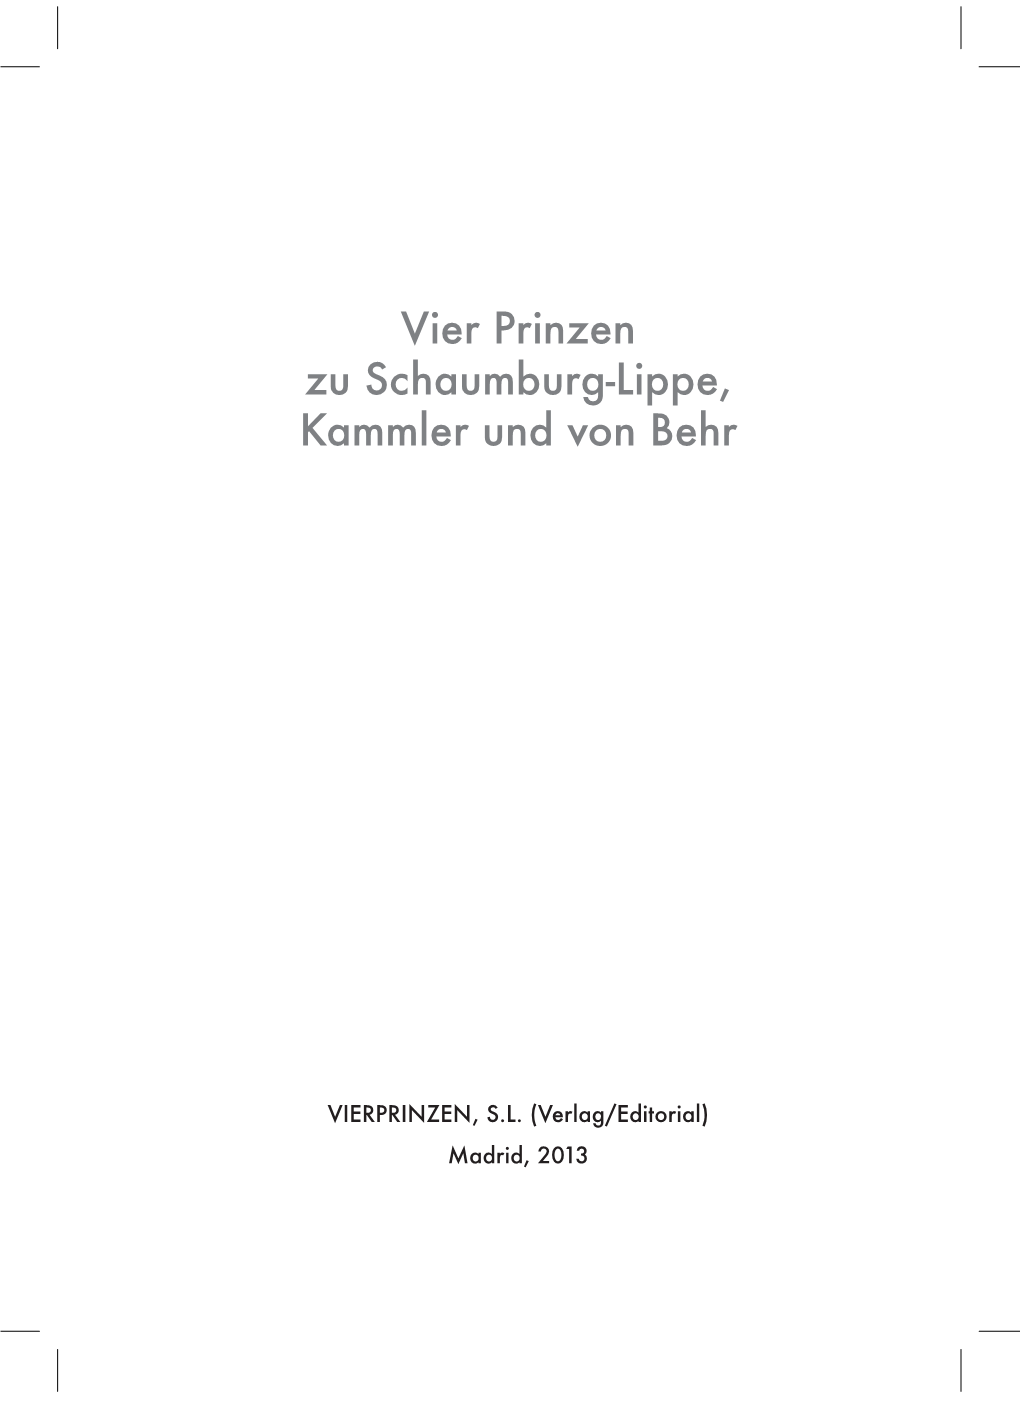 Vier Prinzen Zu Schaumburg-Lippe, Kammler Und Von Behr